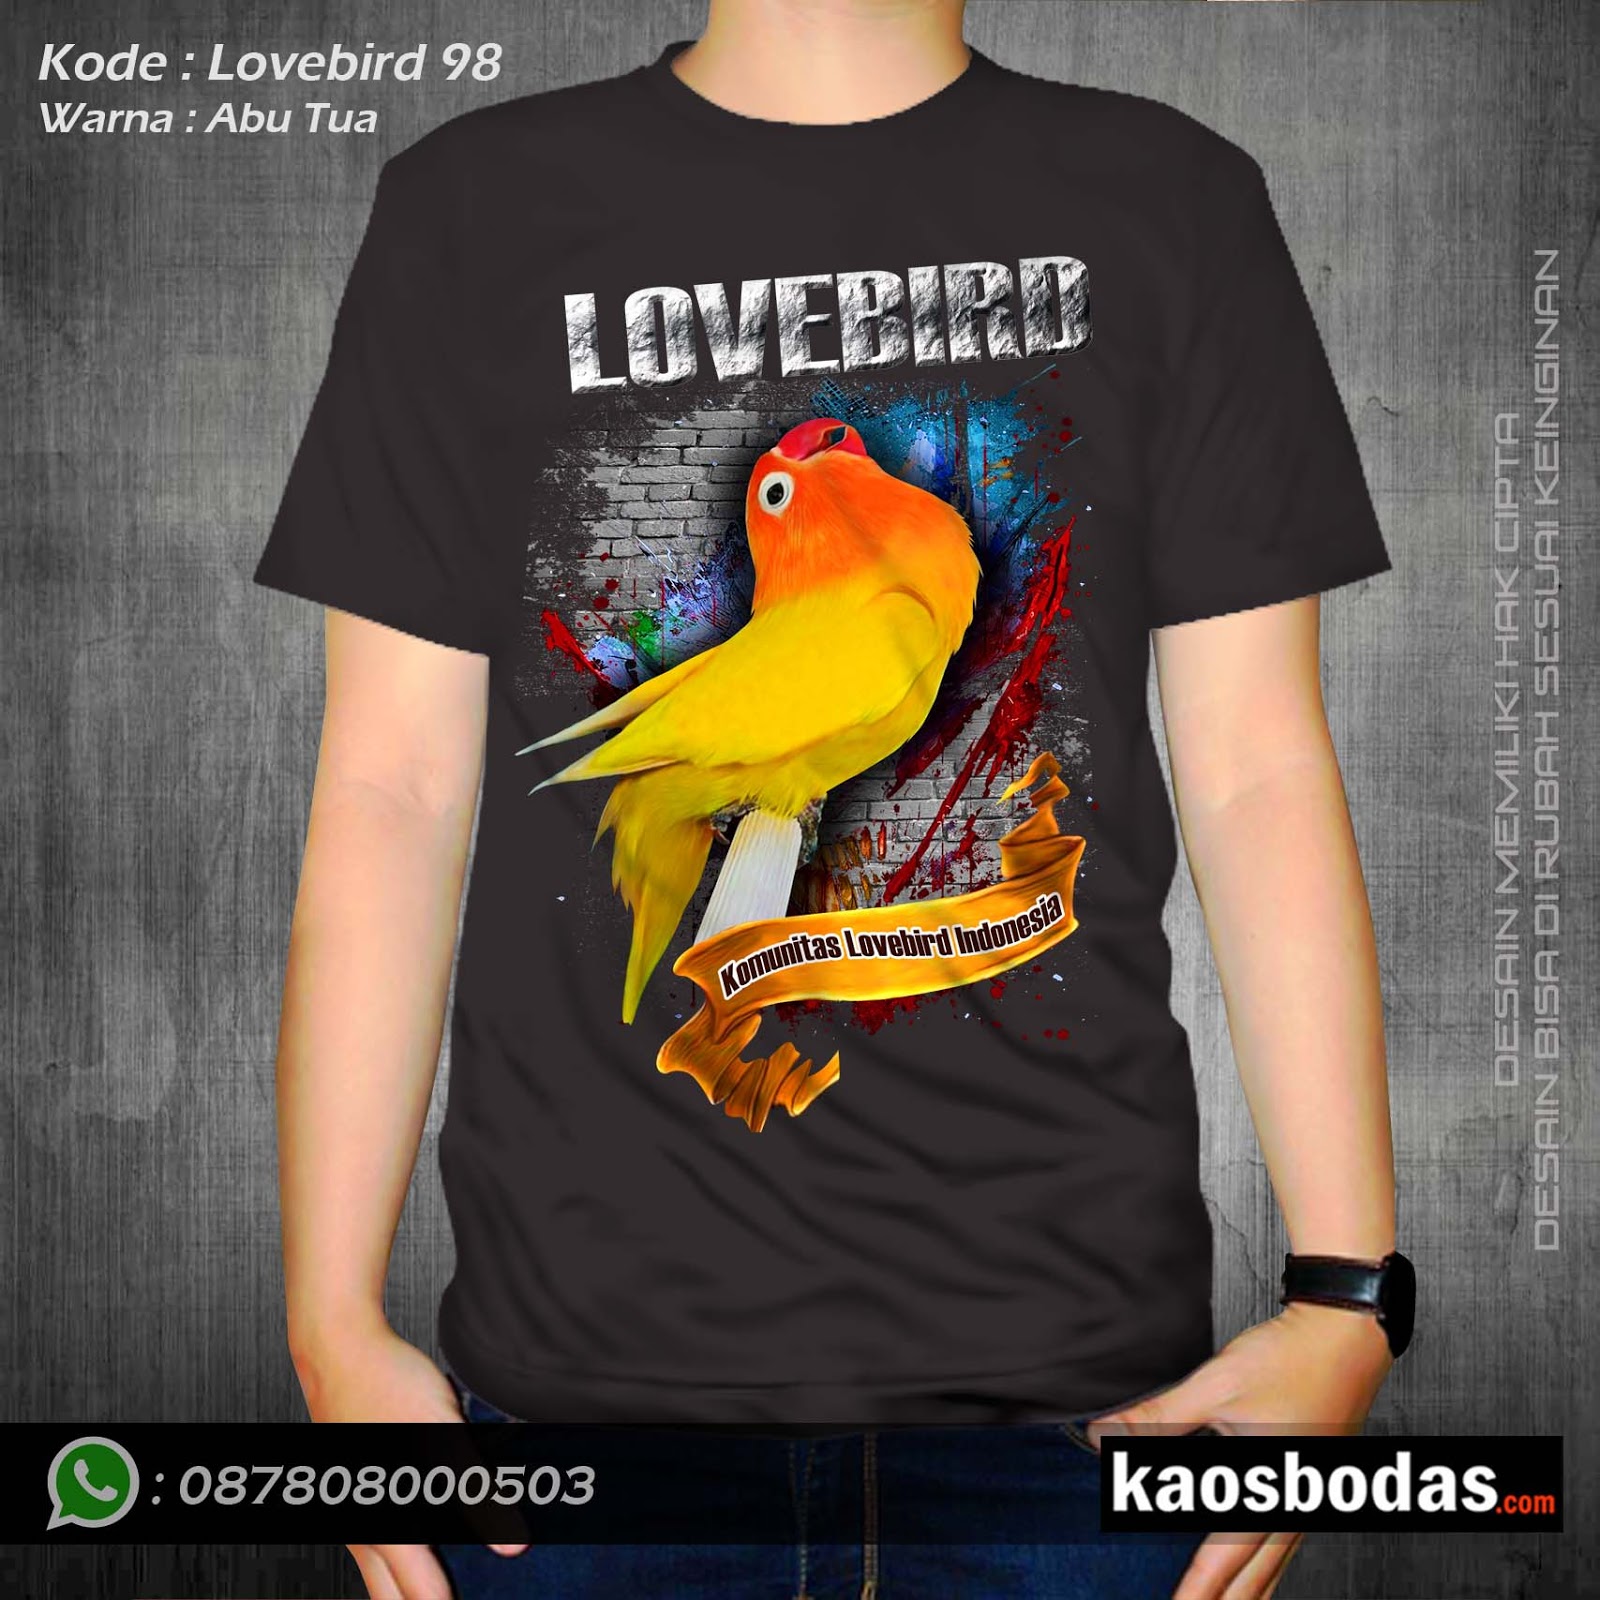 Lovebird 98 Wa 087808000503 Supplier Kaos Kicau Kualitas Premium